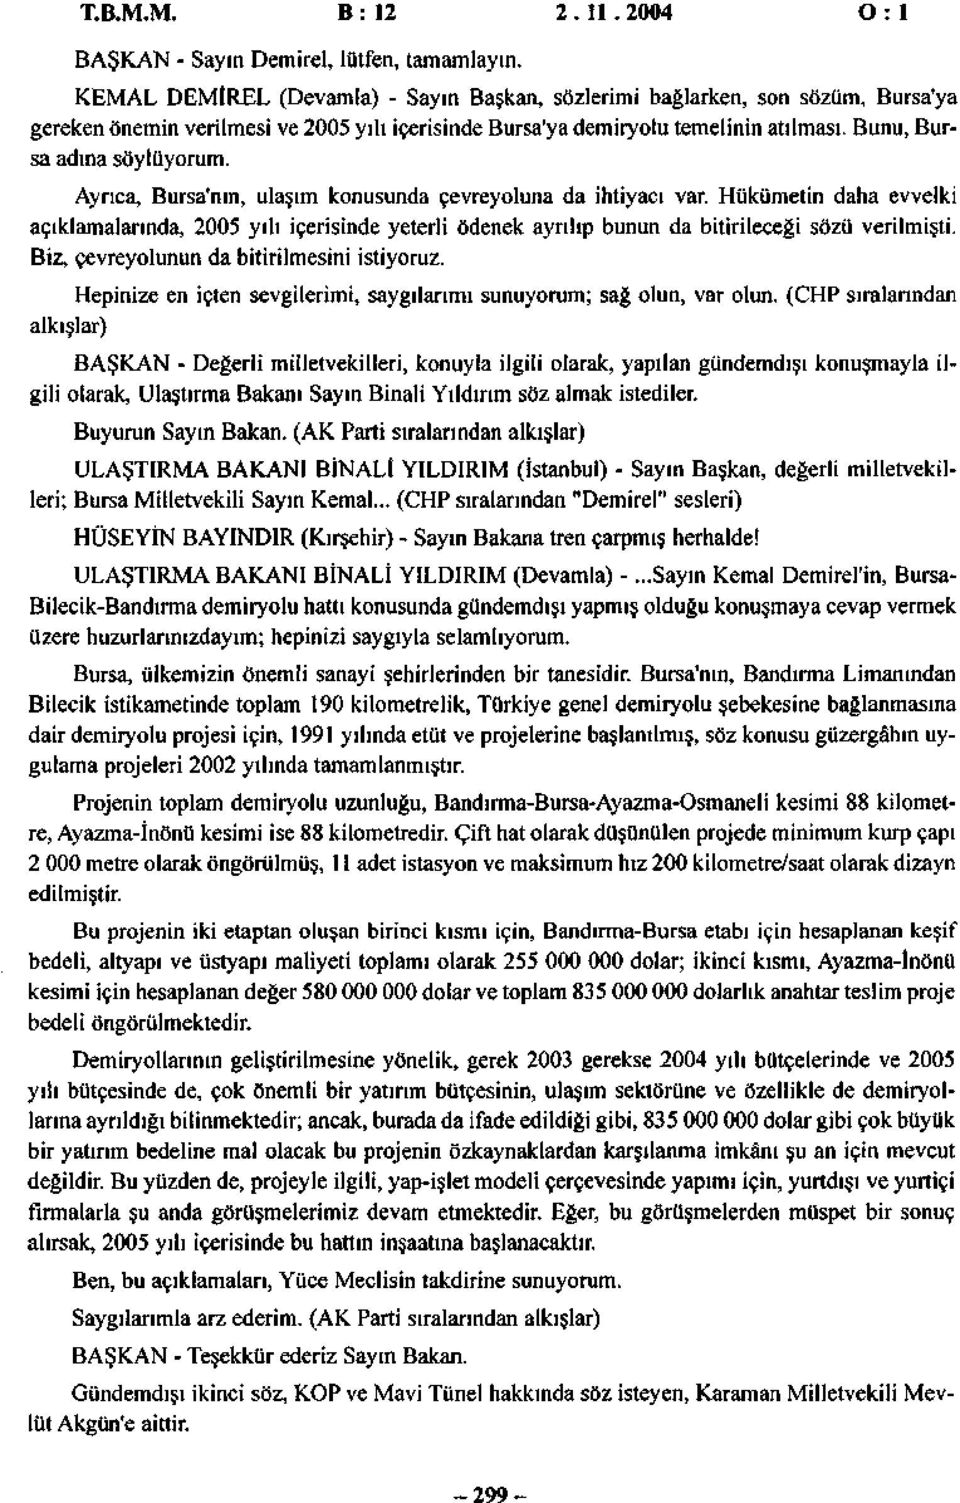 Ayrıca, Bursa'nın, ulaşım konusunda çevreyoluna da ihtiyacı var. Hükümetin daha evvelki açıklamalarında, 2005 yılı içerisinde yeterli ödenek ayrılıp bunun da bitirileceği sözü verilmişti.